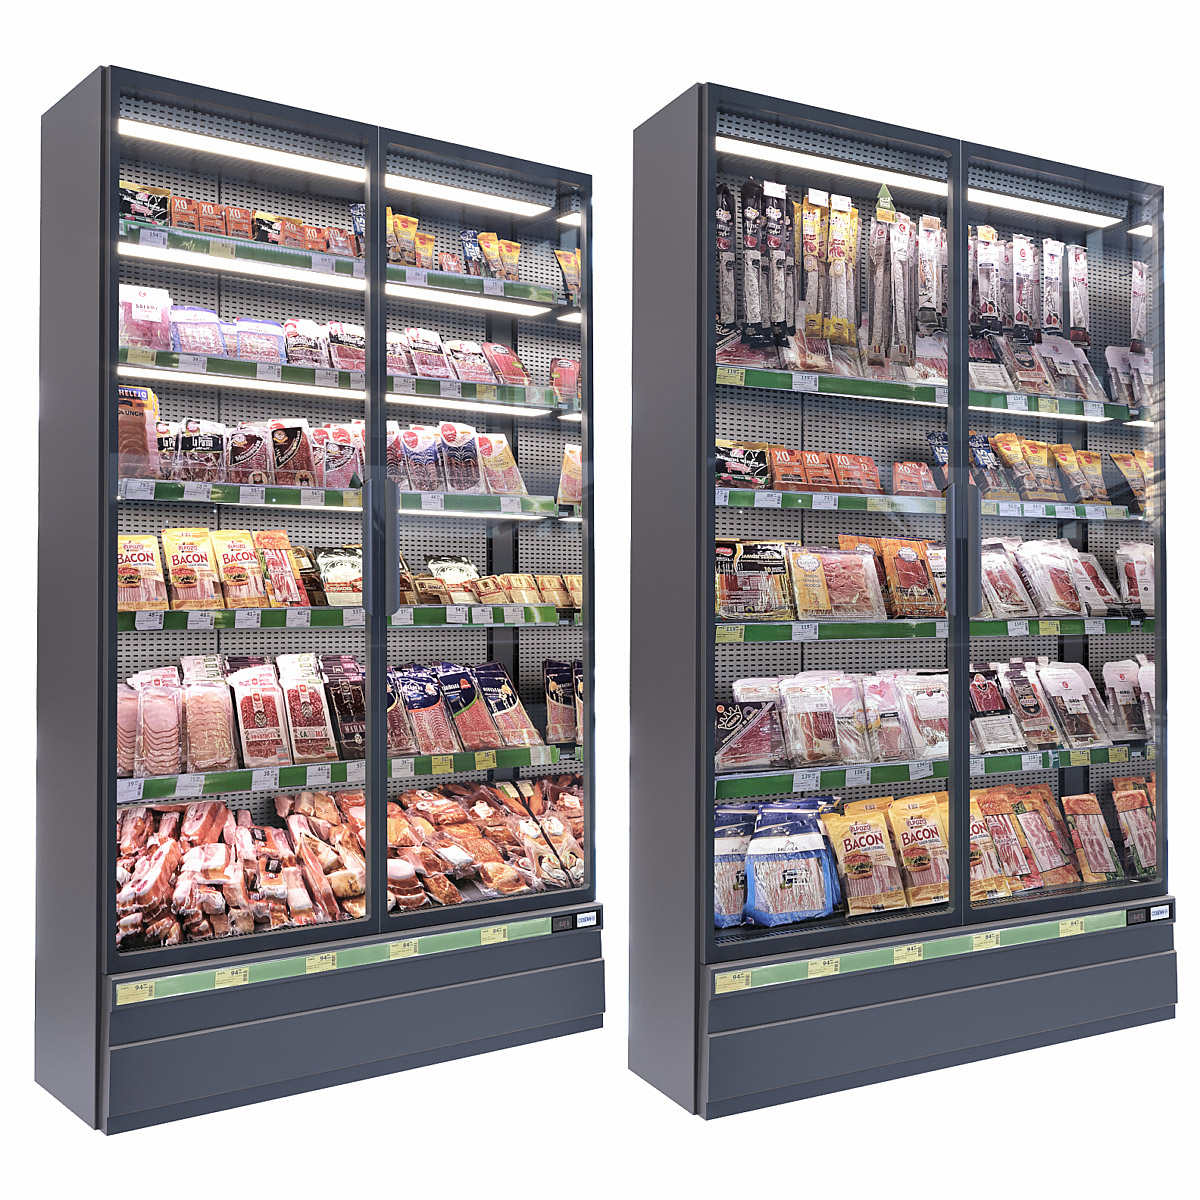 market-refrigerator-2